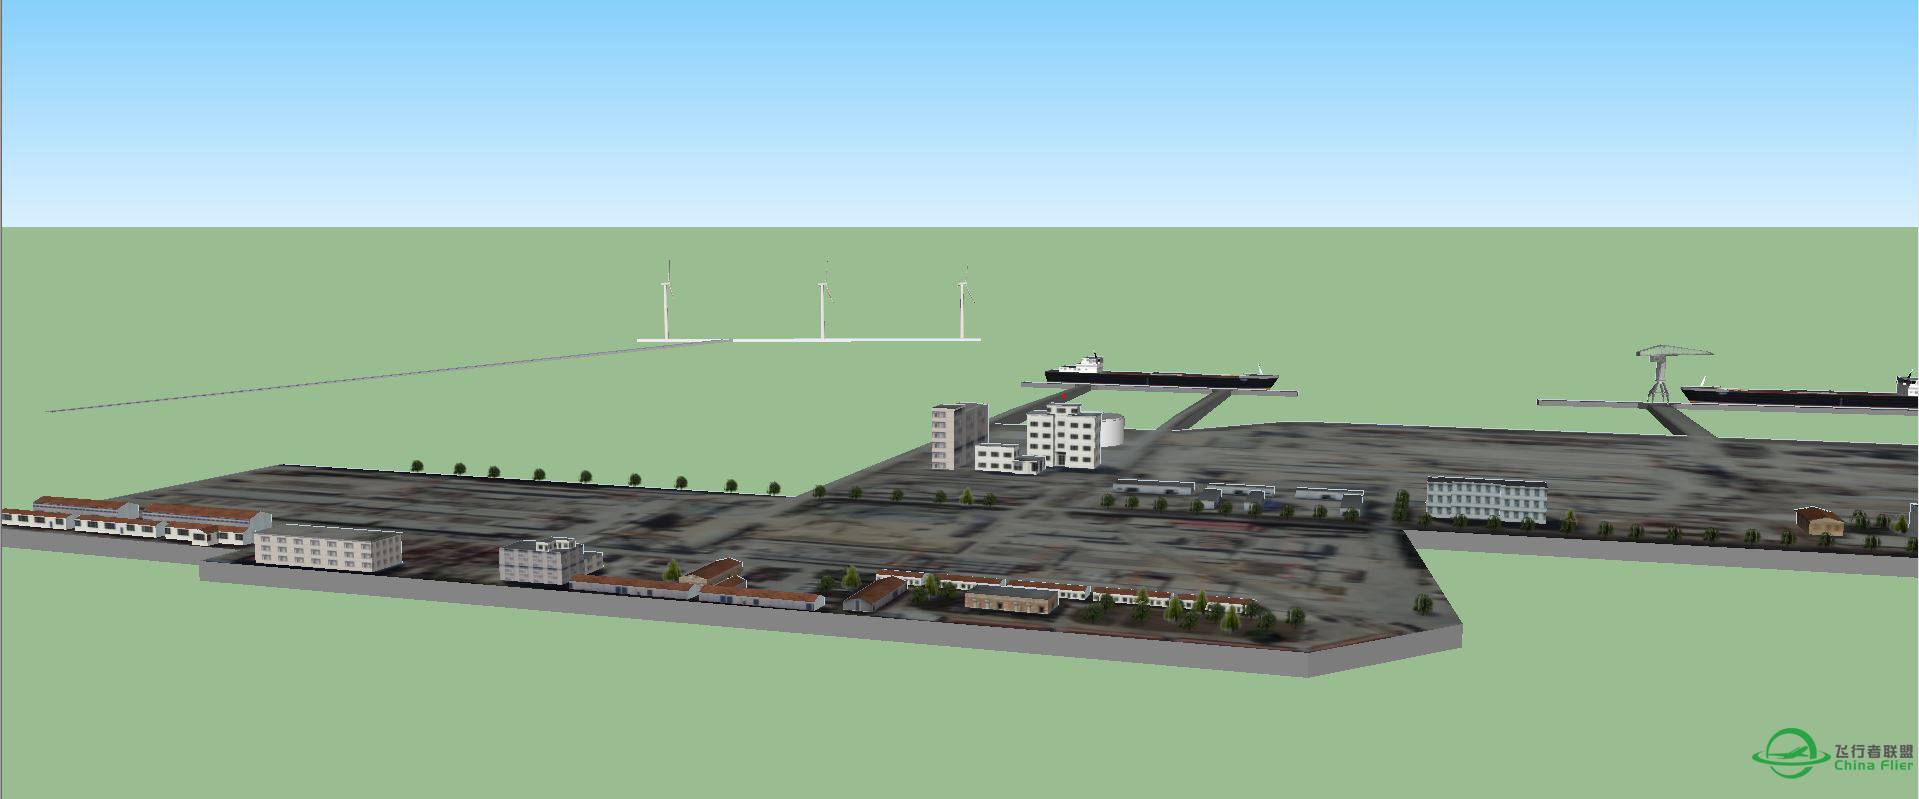 长兴岛地景的横沙岛海鸿村码头3D建模完成-6138 